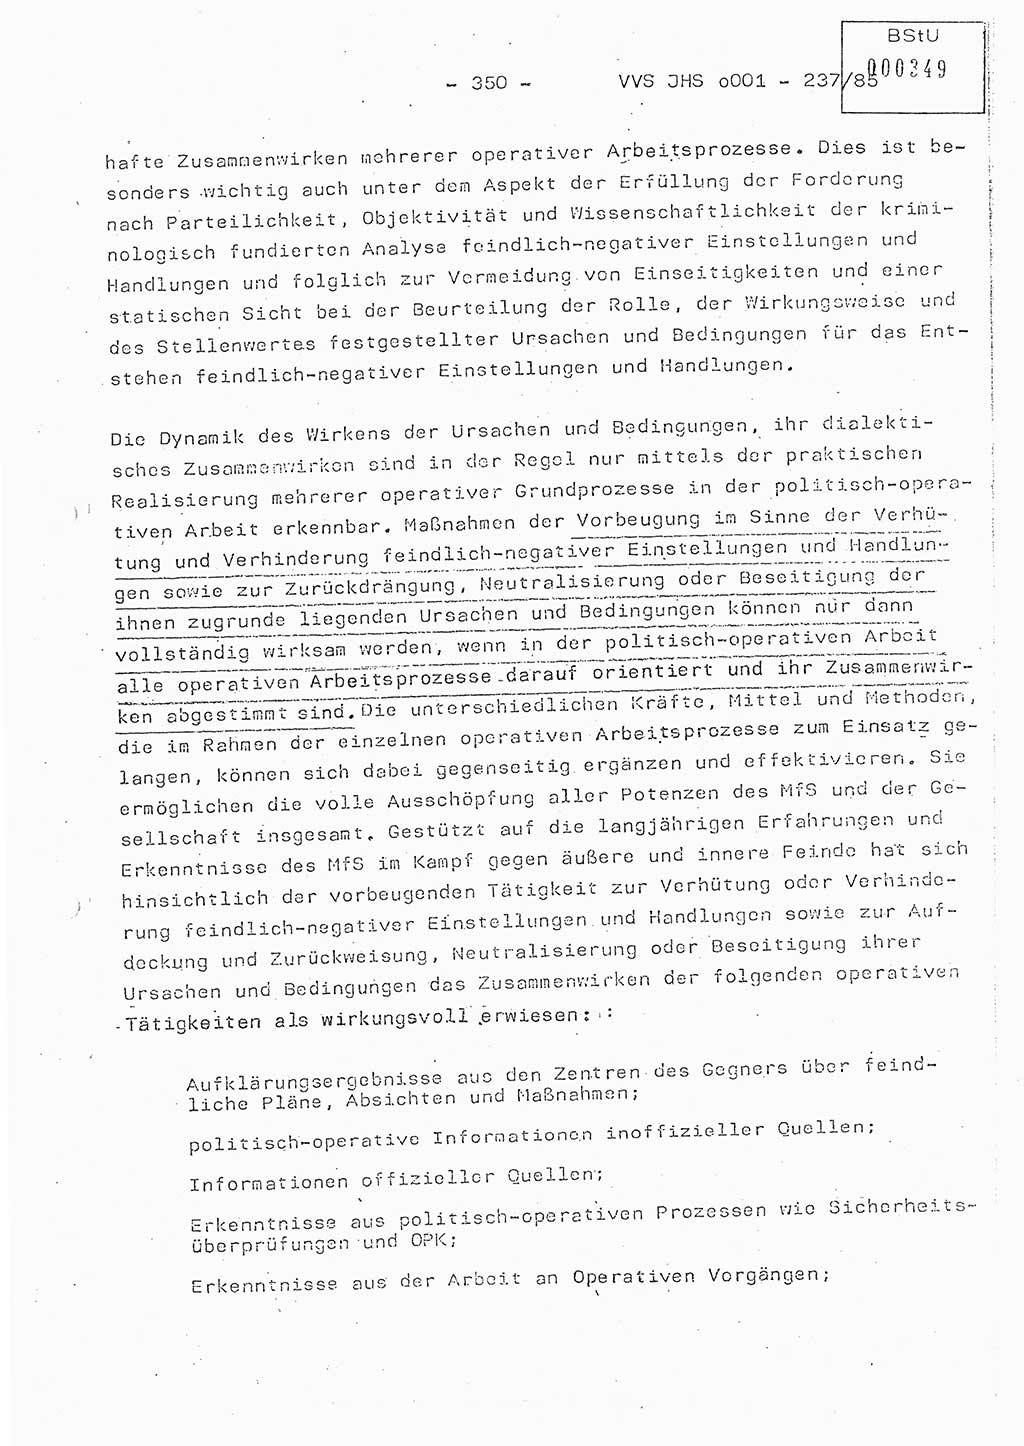 Dissertation Oberstleutnant Peter Jakulski (JHS), Oberstleutnat Christian Rudolph (HA Ⅸ), Major Horst Böttger (ZMD), Major Wolfgang Grüneberg (JHS), Major Albert Meutsch (JHS), Ministerium für Staatssicherheit (MfS) [Deutsche Demokratische Republik (DDR)], Juristische Hochschule (JHS), Vertrauliche Verschlußsache (VVS) o001-237/85, Potsdam 1985, Seite 350 (Diss. MfS DDR JHS VVS o001-237/85 1985, S. 350)